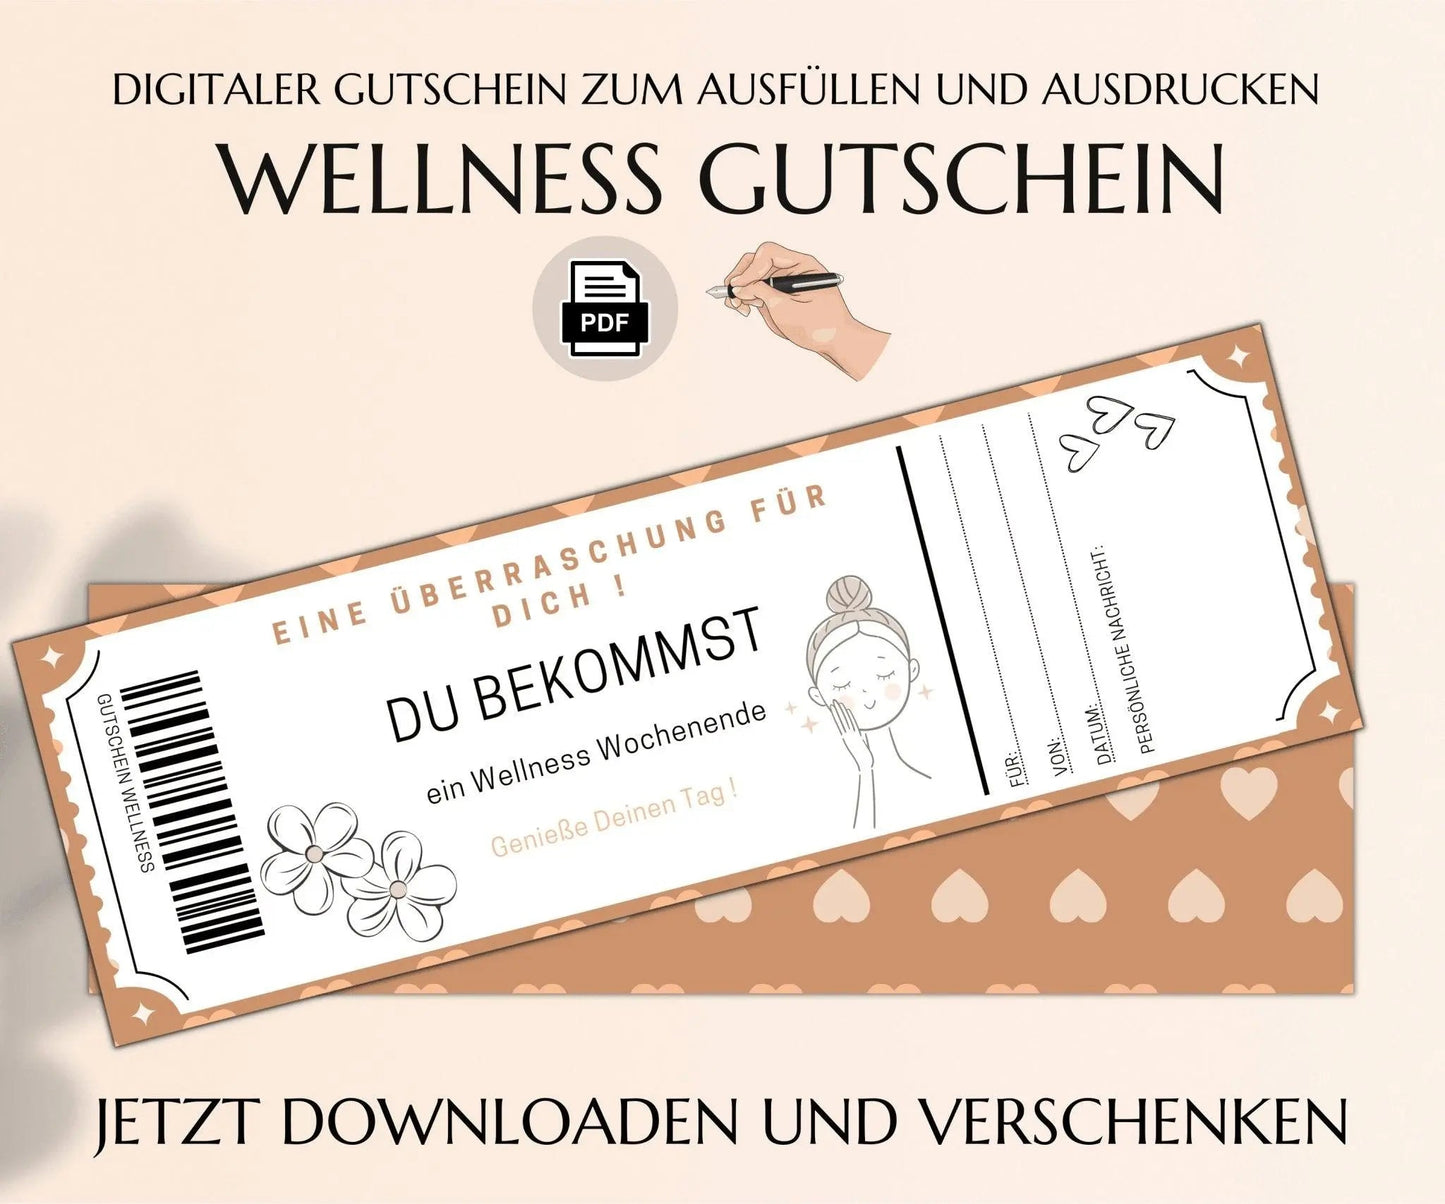 Wellness Wochenende Gutschein Vorlage zum Ausdrucken | JSK002 - JSKDesignStudio.de